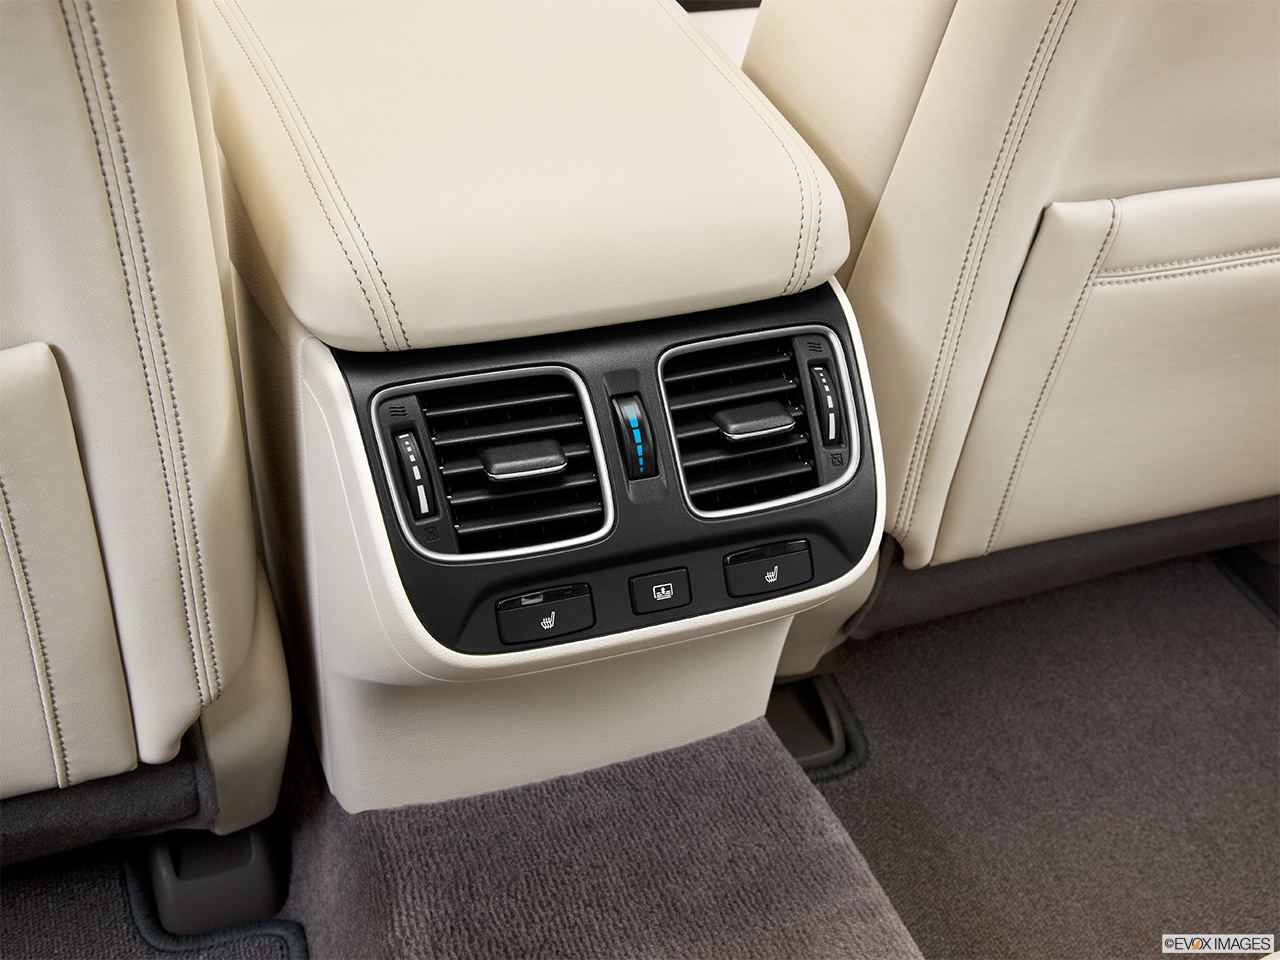 2014 Acura RLX Base Rear A/C controls. 